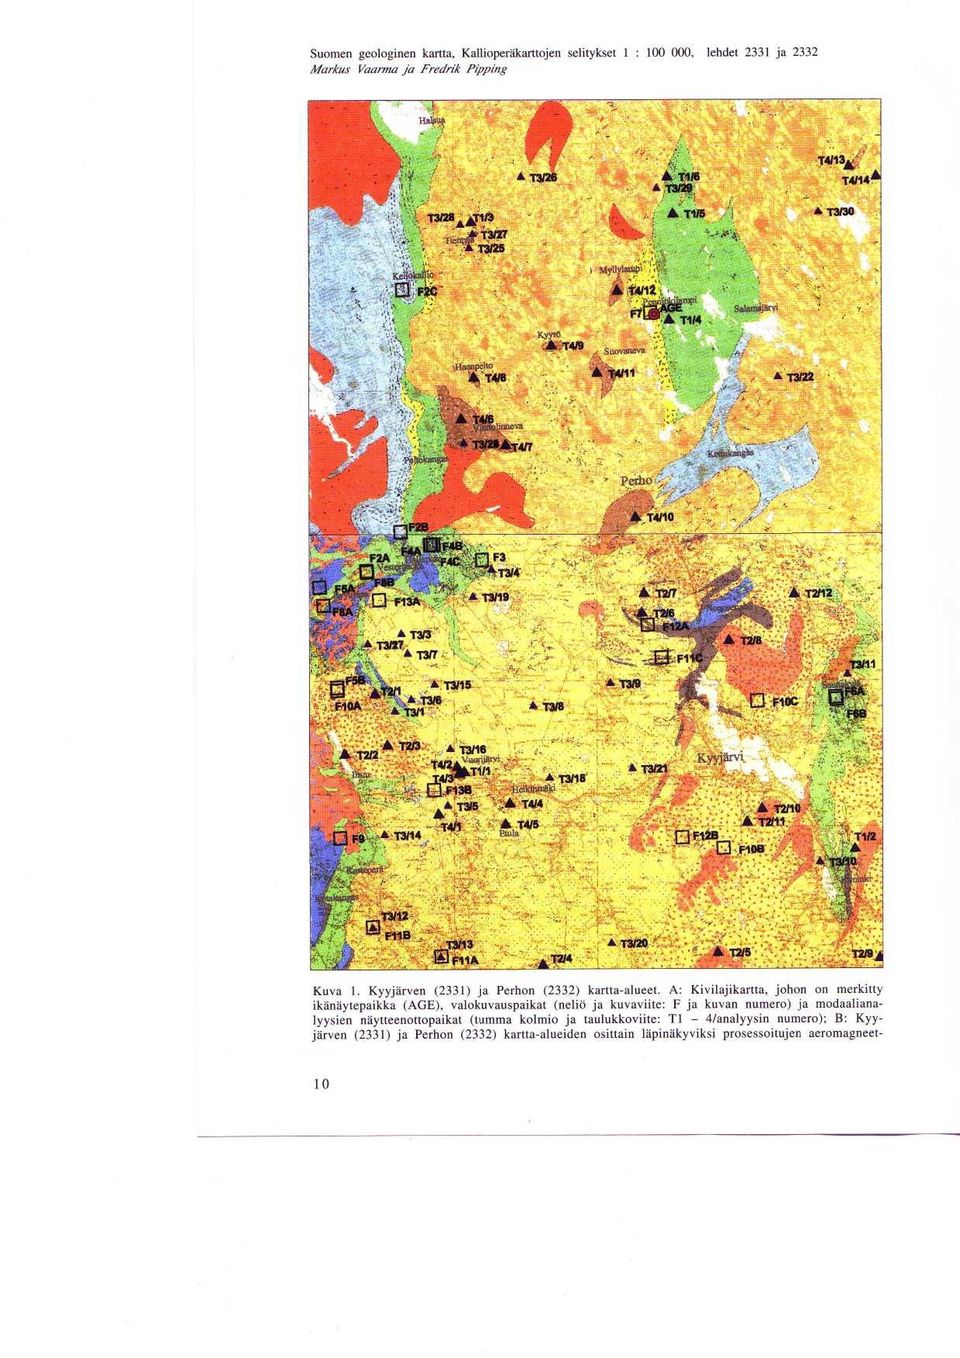 111 F12B - F T3120 A Kuva 1 Kyyjarven (2331) ja Perhon (2332) kartta-alueet A : Kivilajikartta, johon on merkitty ikanaytepaikka (AGE), valokuvauspaikat (nelio ja kuvaviite: F ja kuvan numero) ja